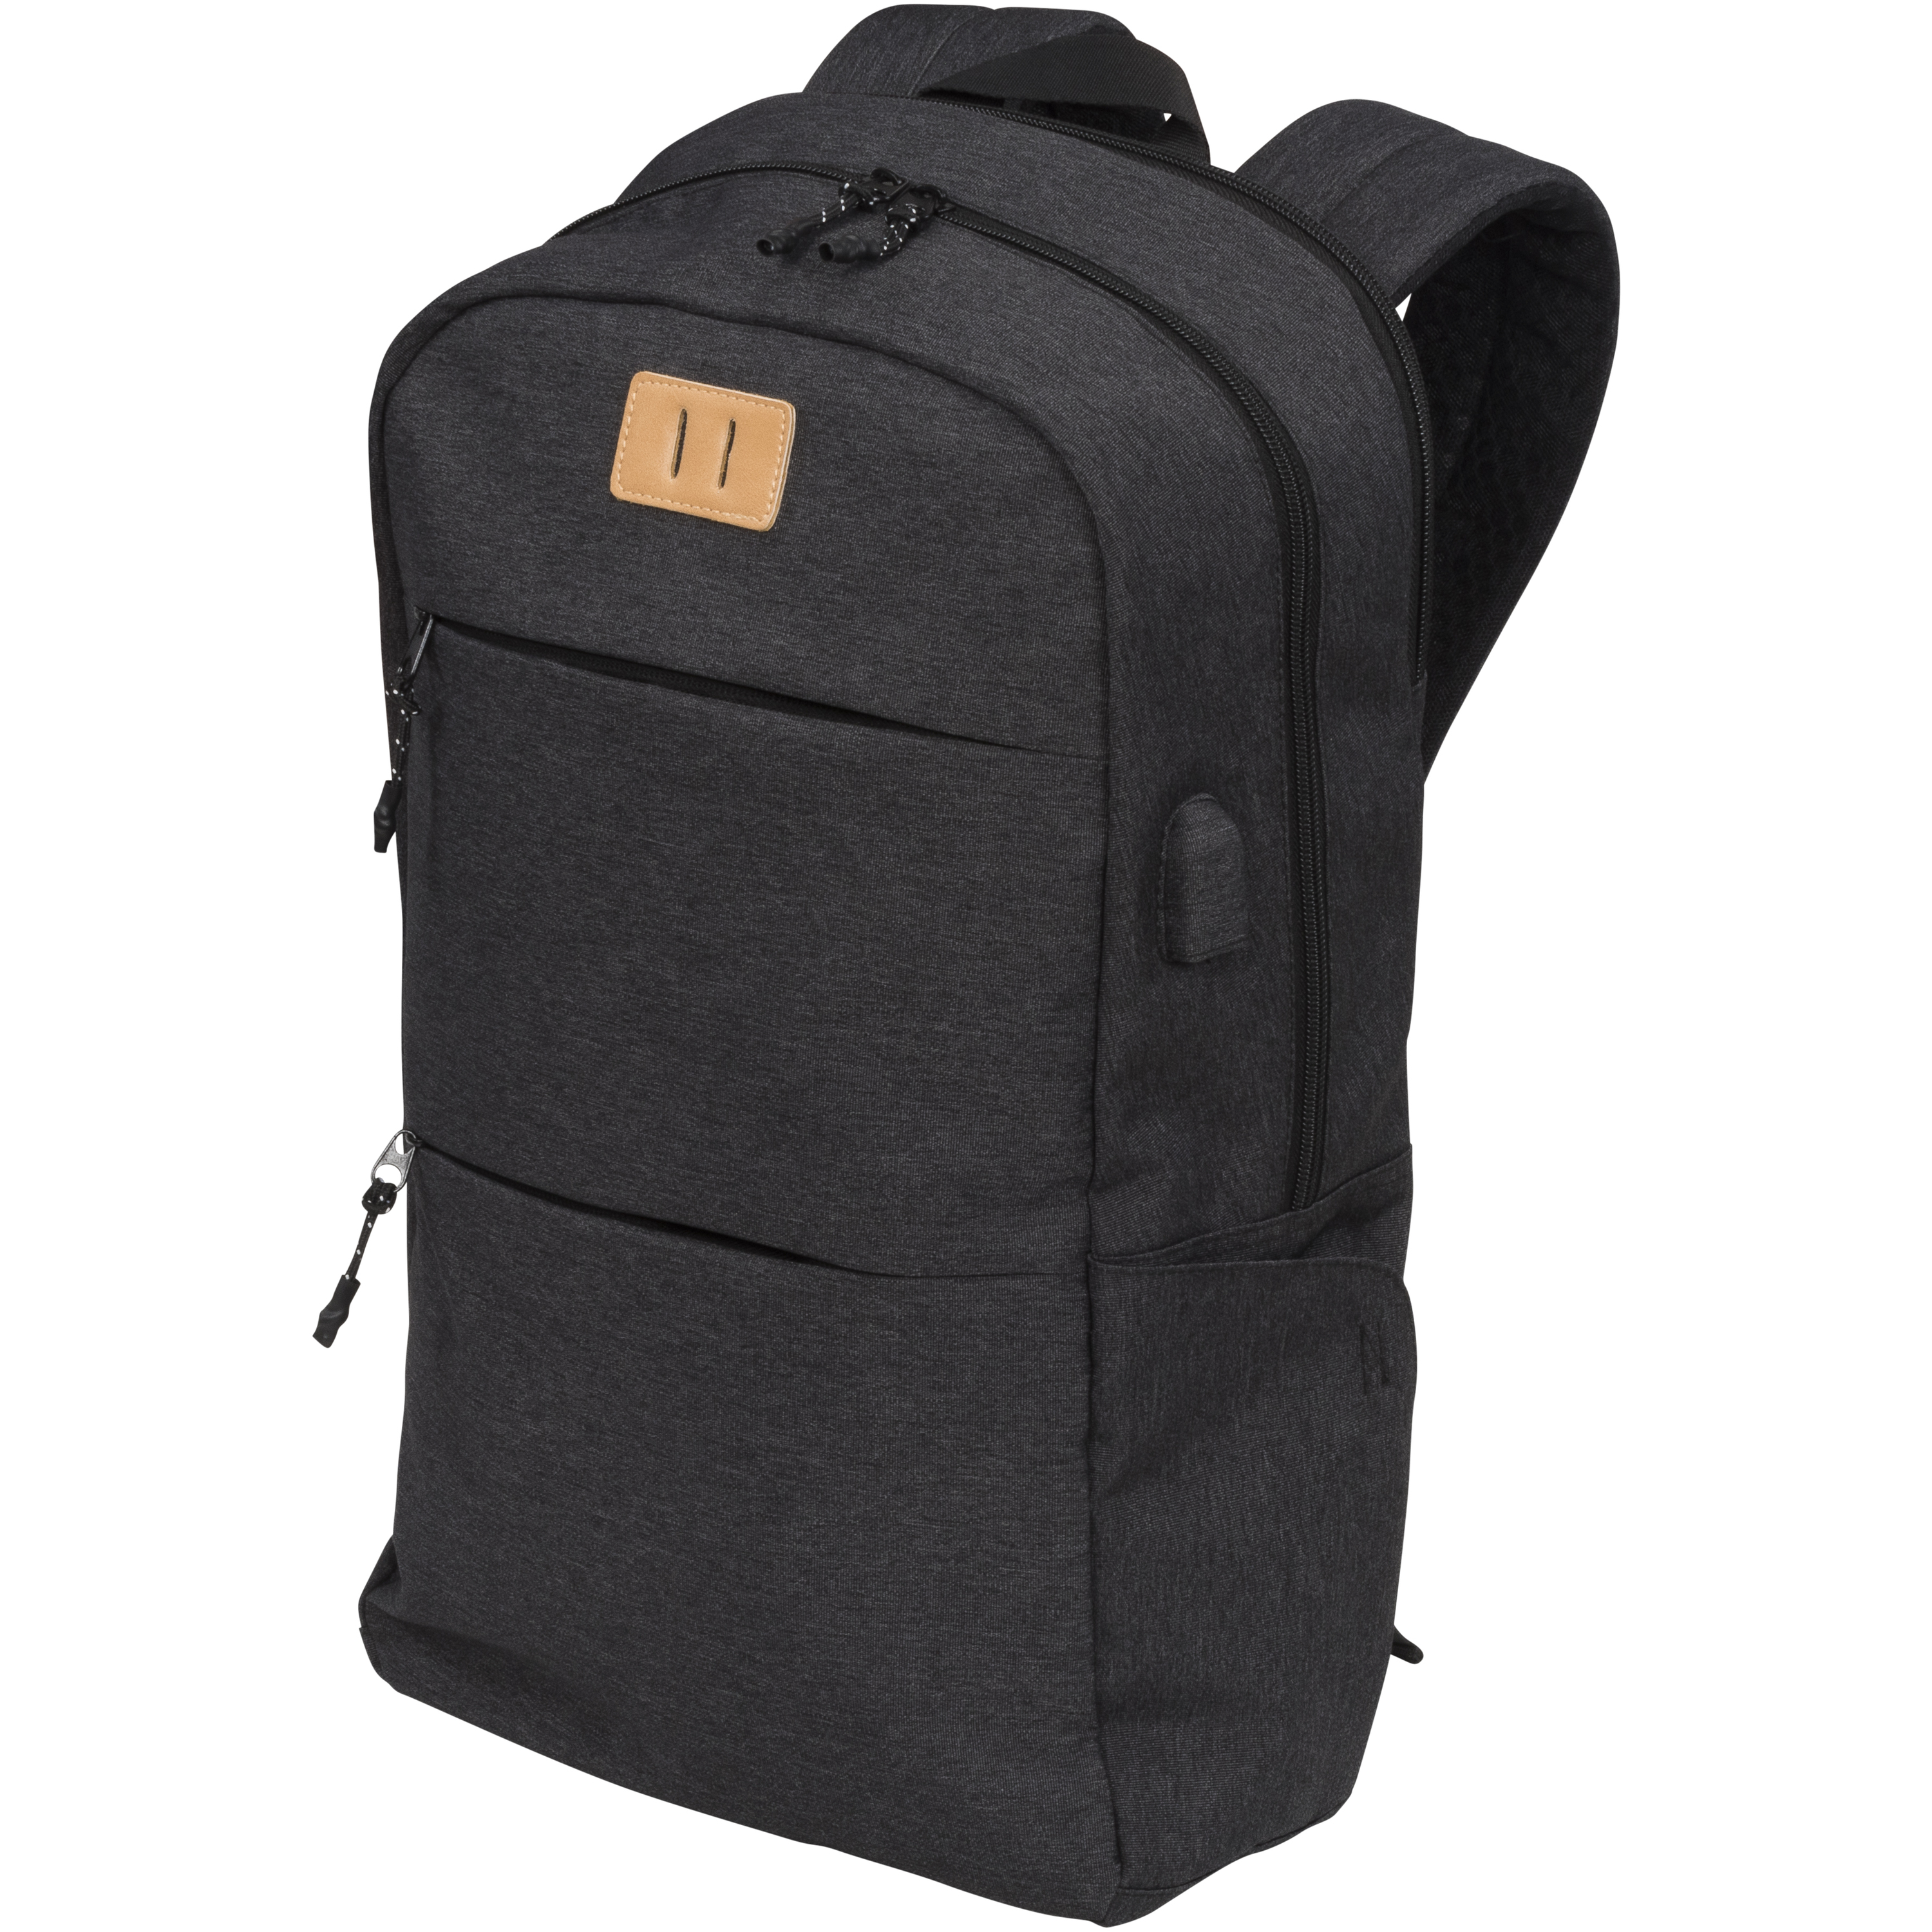 Cason 15" laptop backpack 17L